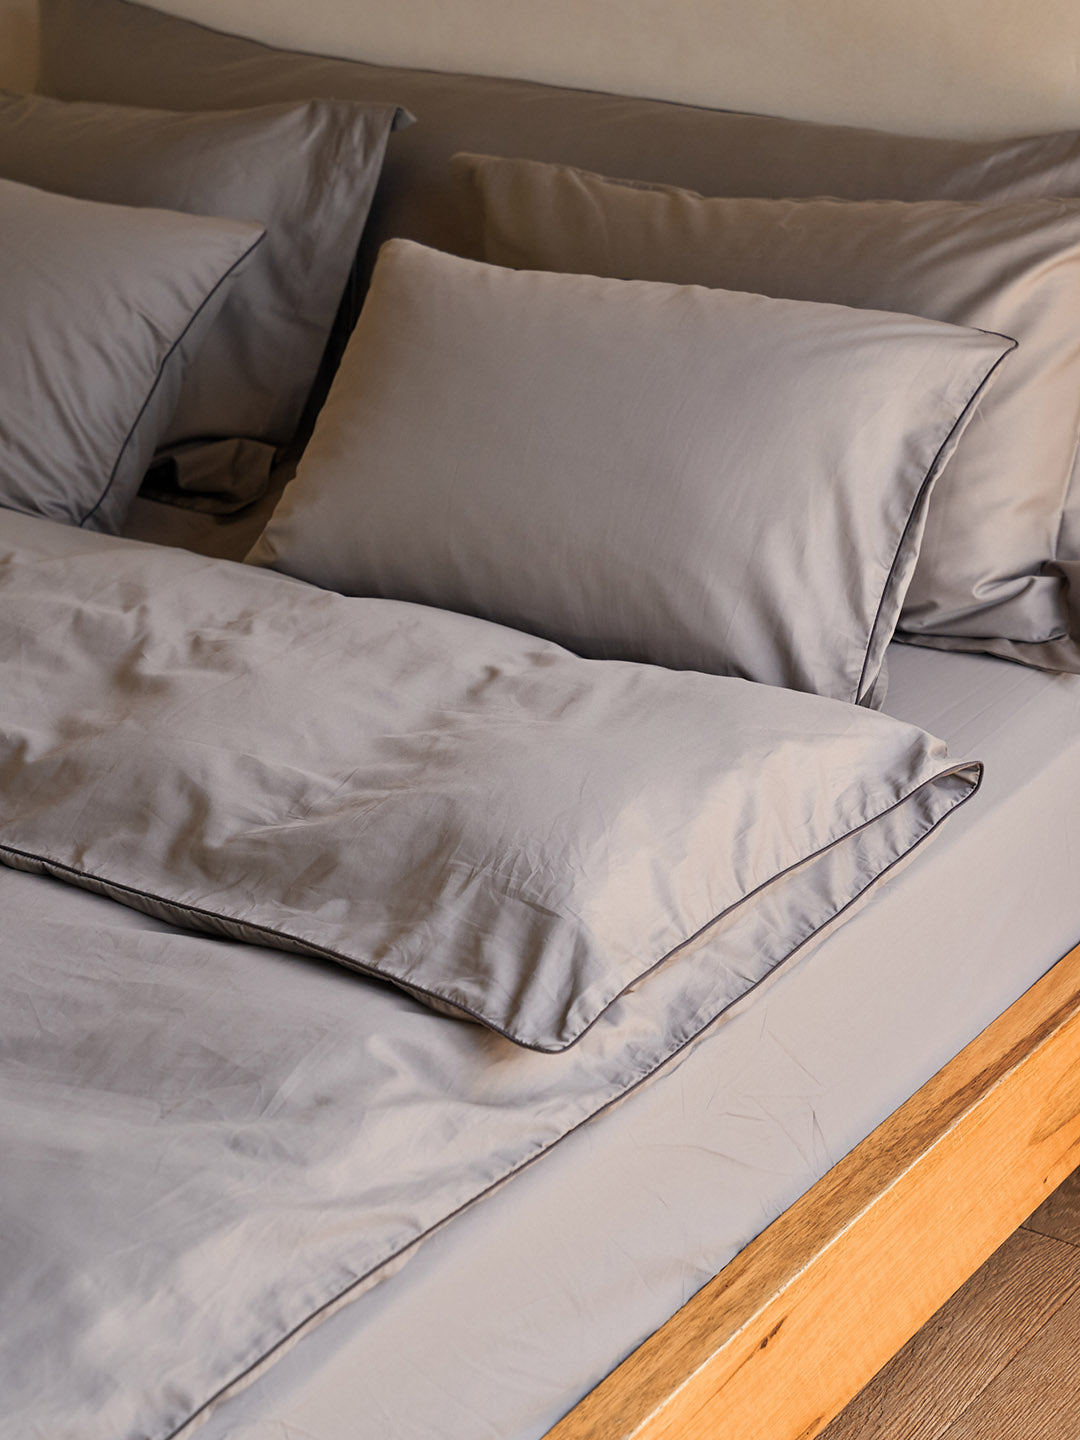 כריות ארוכות בצבע אפור מסדרת נייס על מיטה עם מצעים 